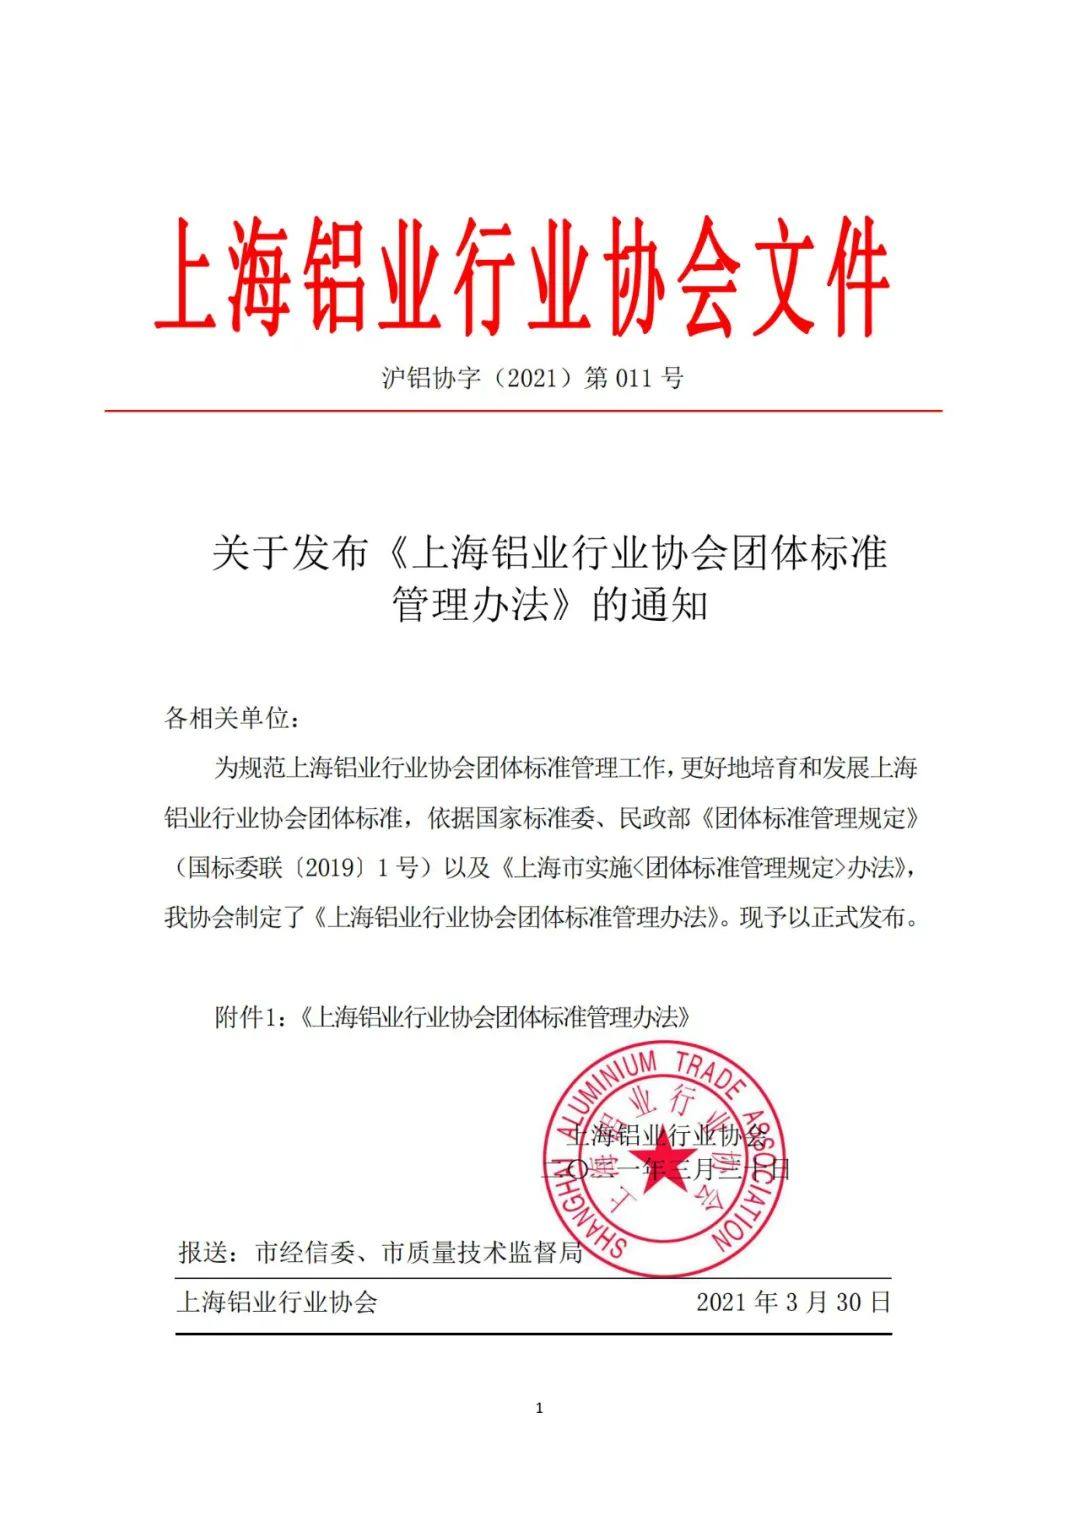 關於發布《上海鋁業行業協會團體標準管理辦法》的通知